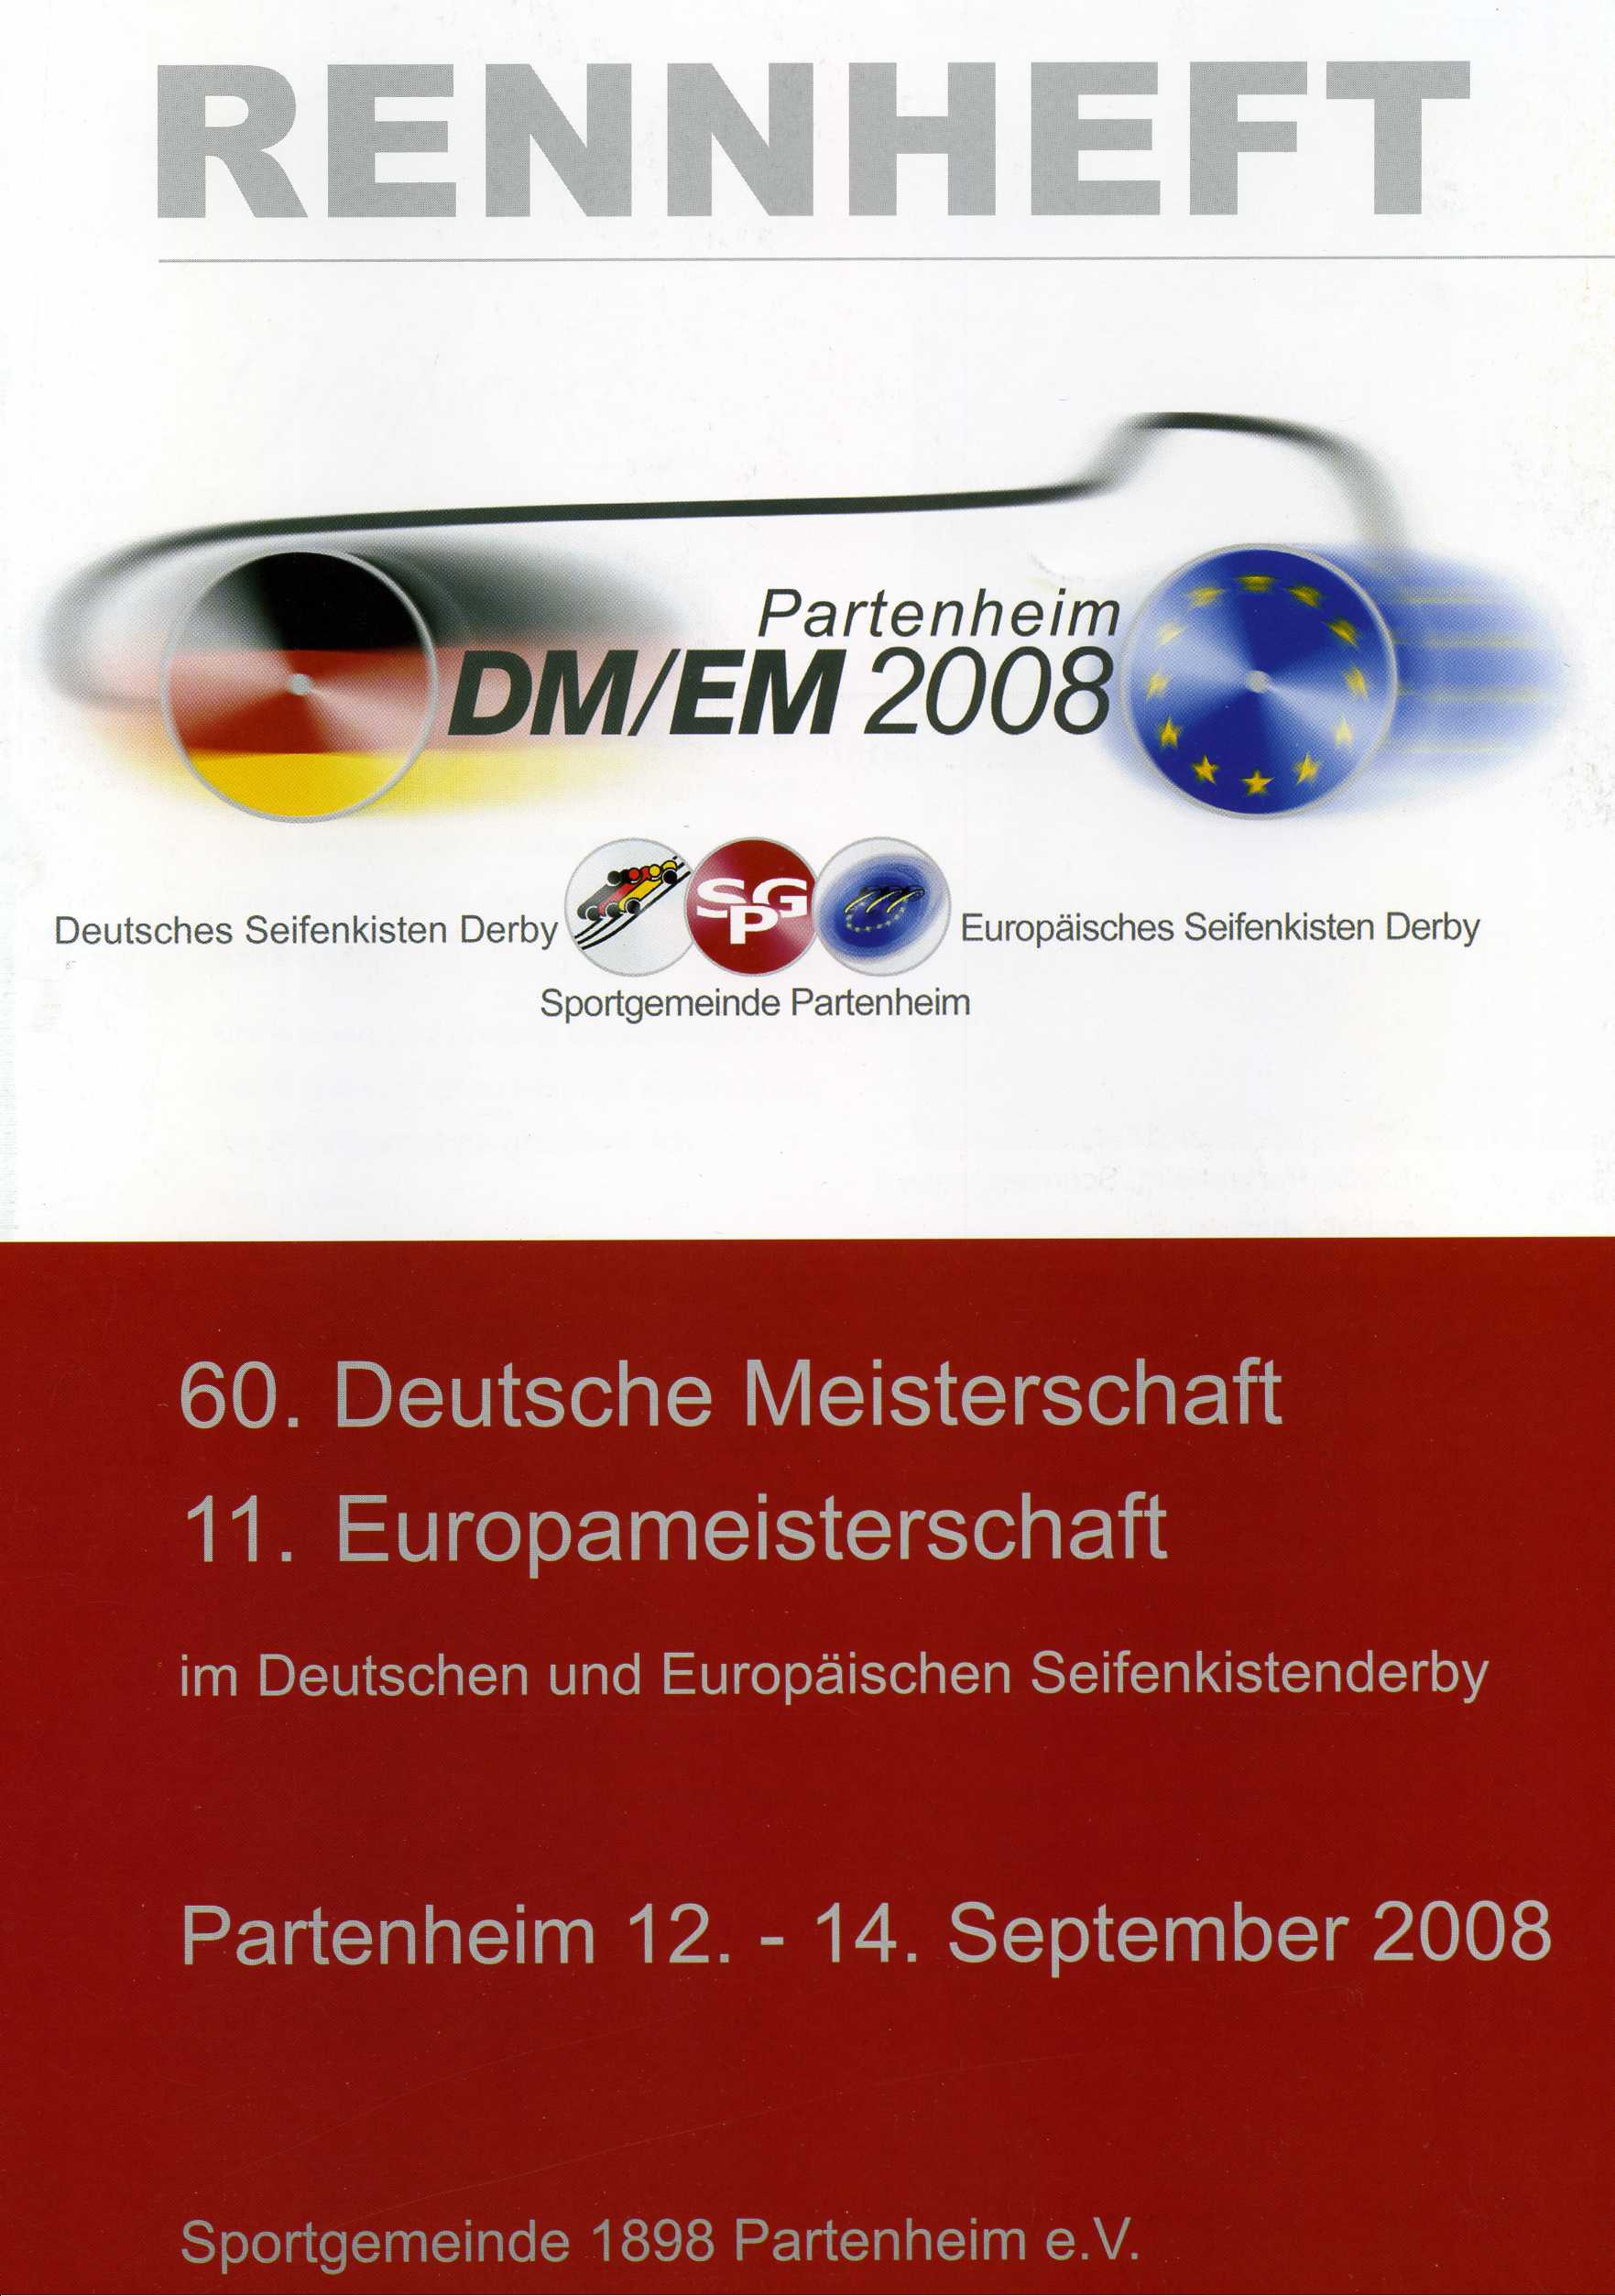 DM_partenheim_2008_001